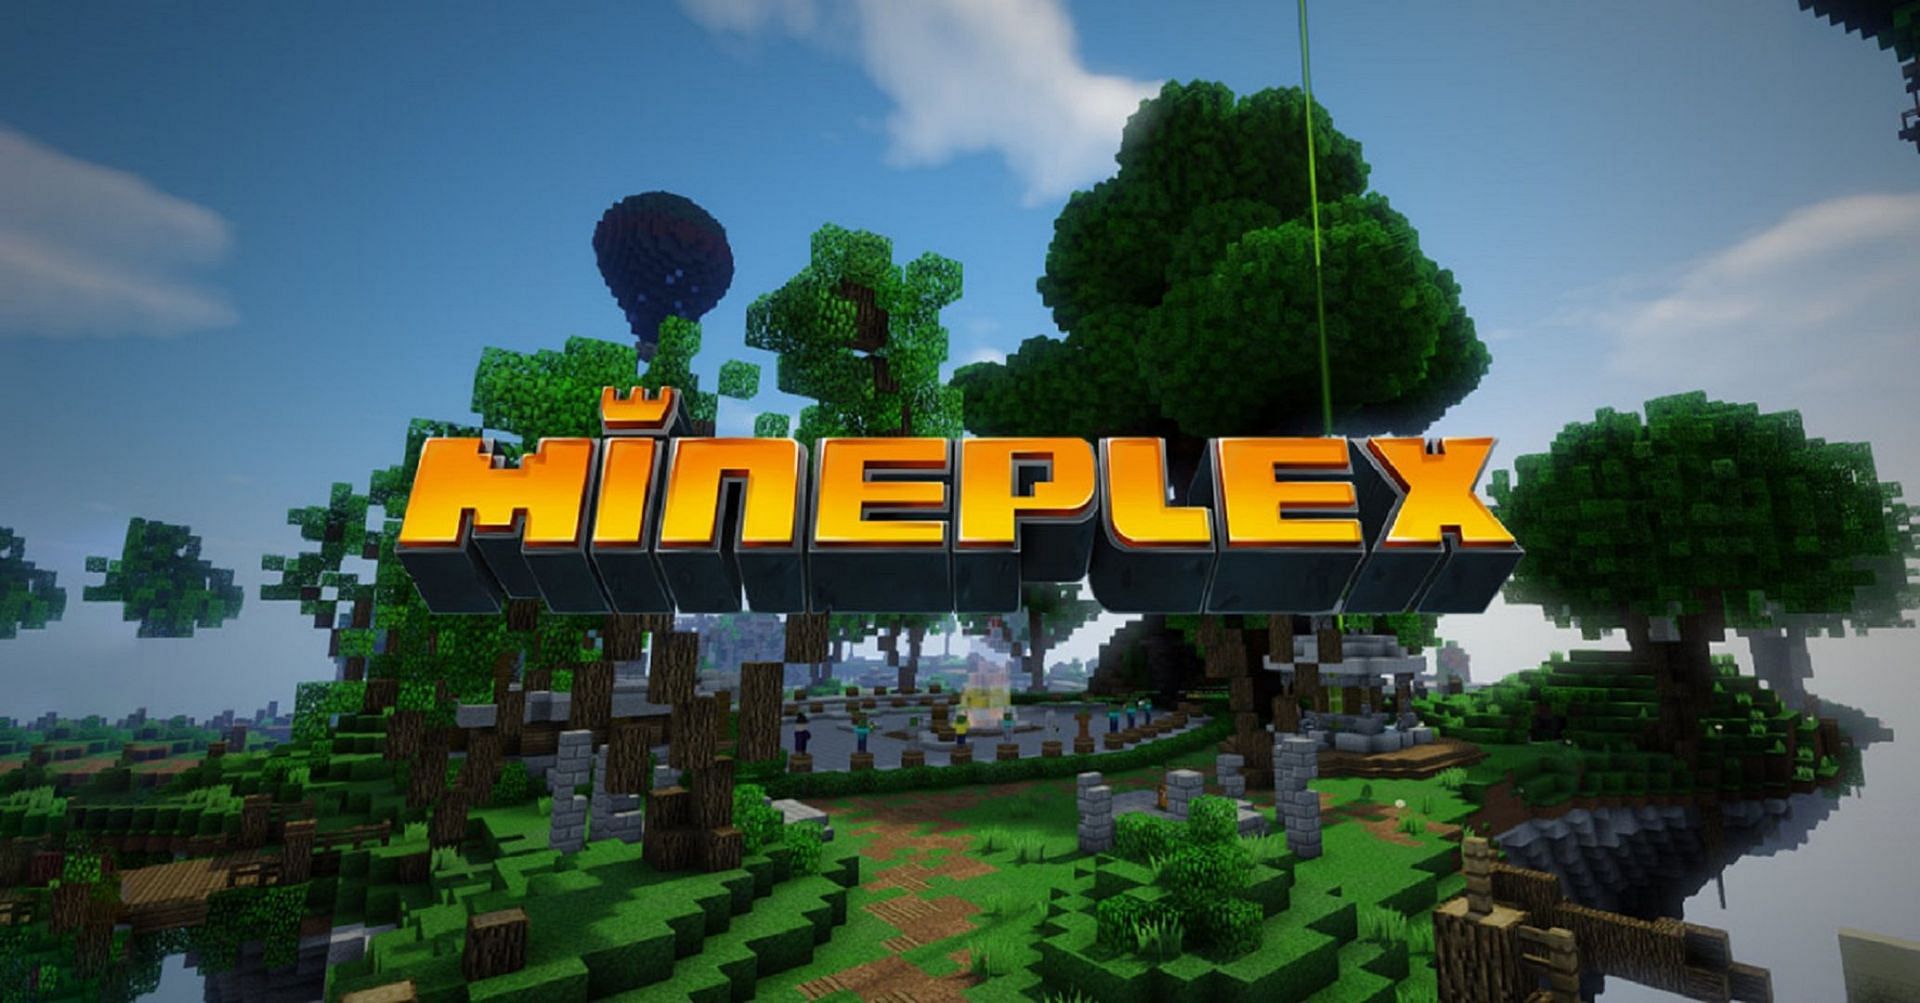 Mineplex आधिकारिक तौर पर Mojang द्वारा समर्थित है (Mineplex के माध्यम से छवि)